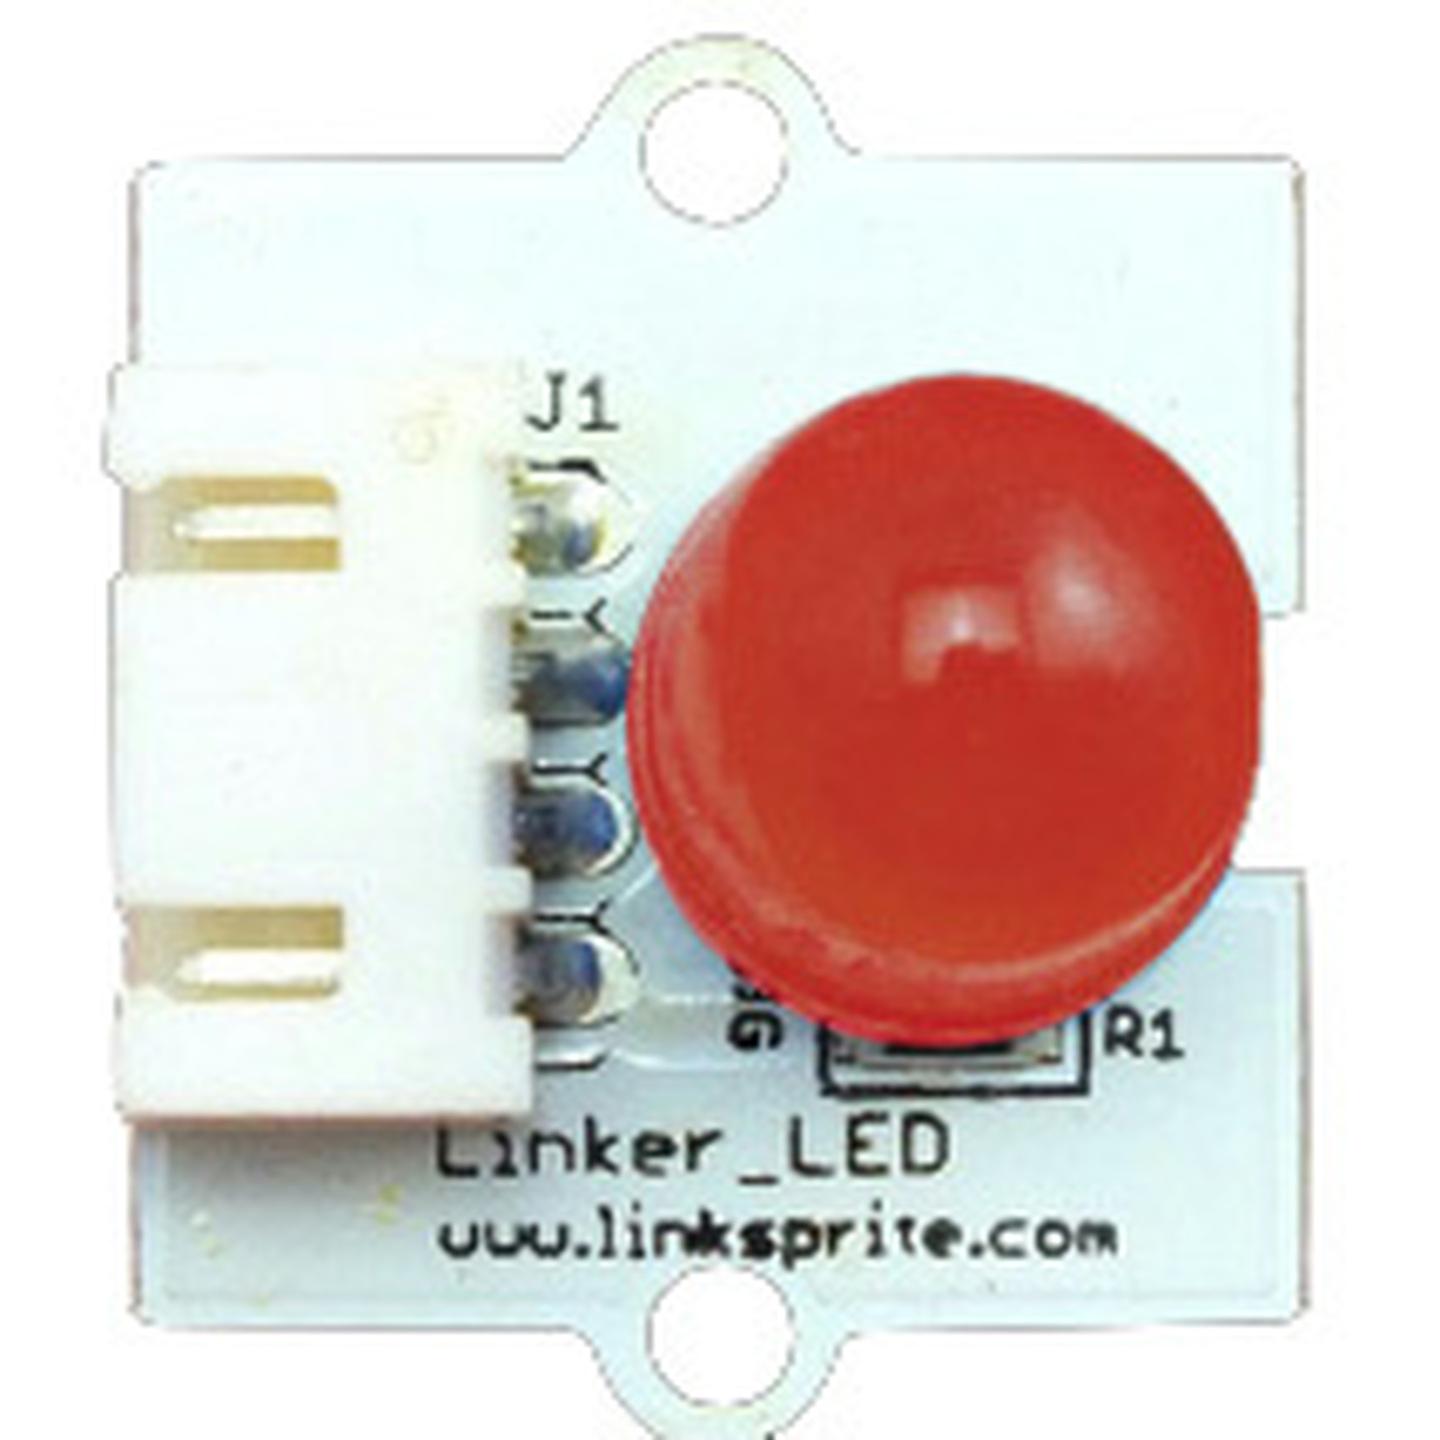 10MM Red LED for Linker Kit